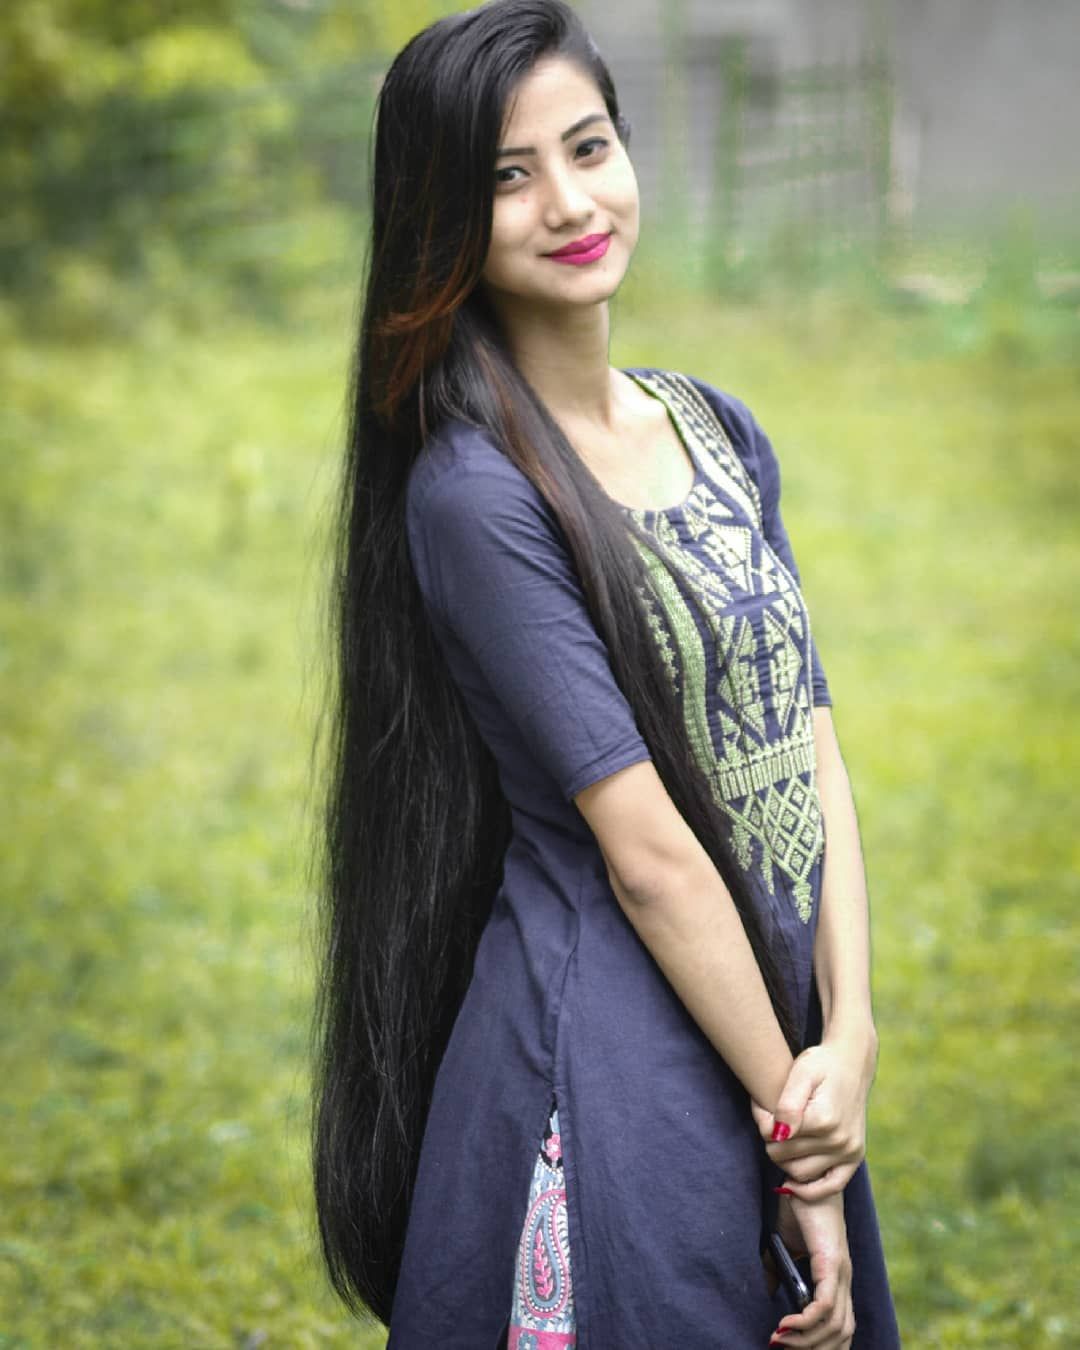 Узбекские красавицы. Узбекские девушки. Красивые девушки узбечки. Красивые таджички. Красивые таджички с длинными волосами.